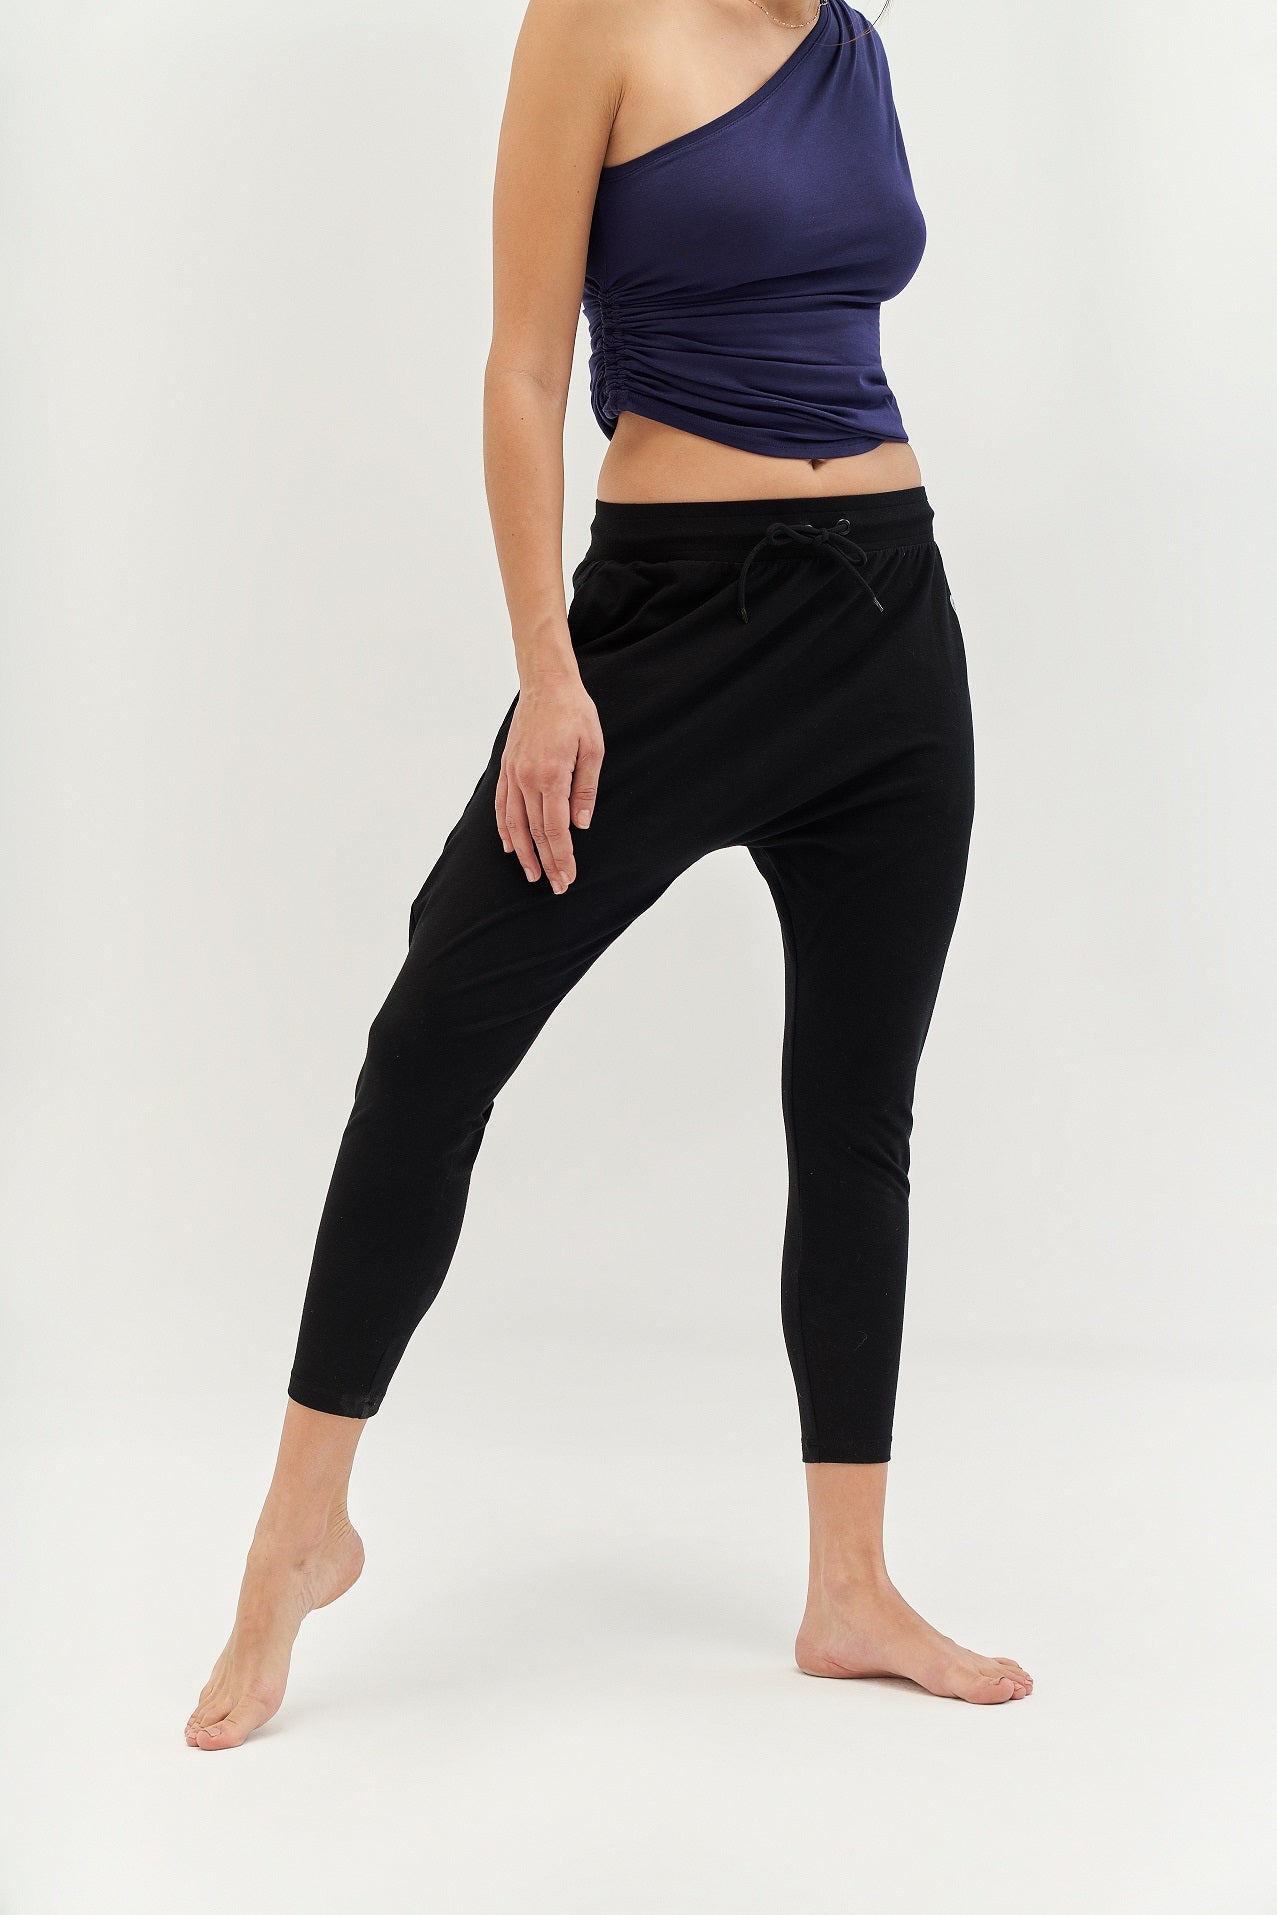 Générique Black Tank Top – Summer Fashion One Shoulder Ladies Yoga